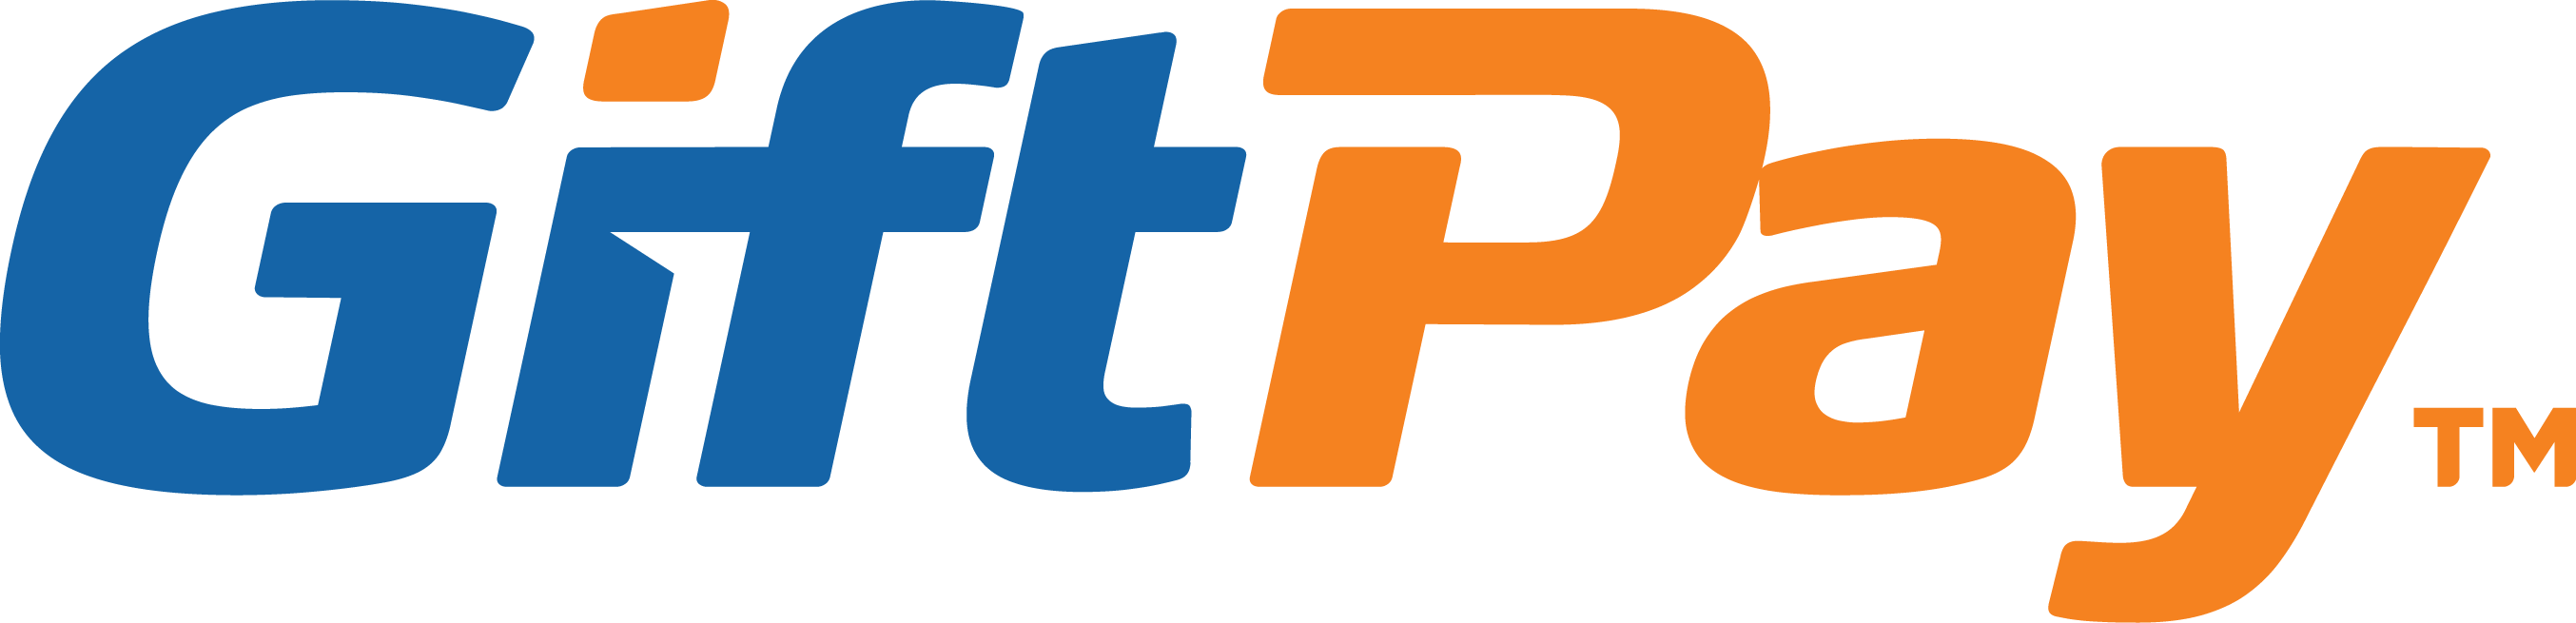 Logo_colour